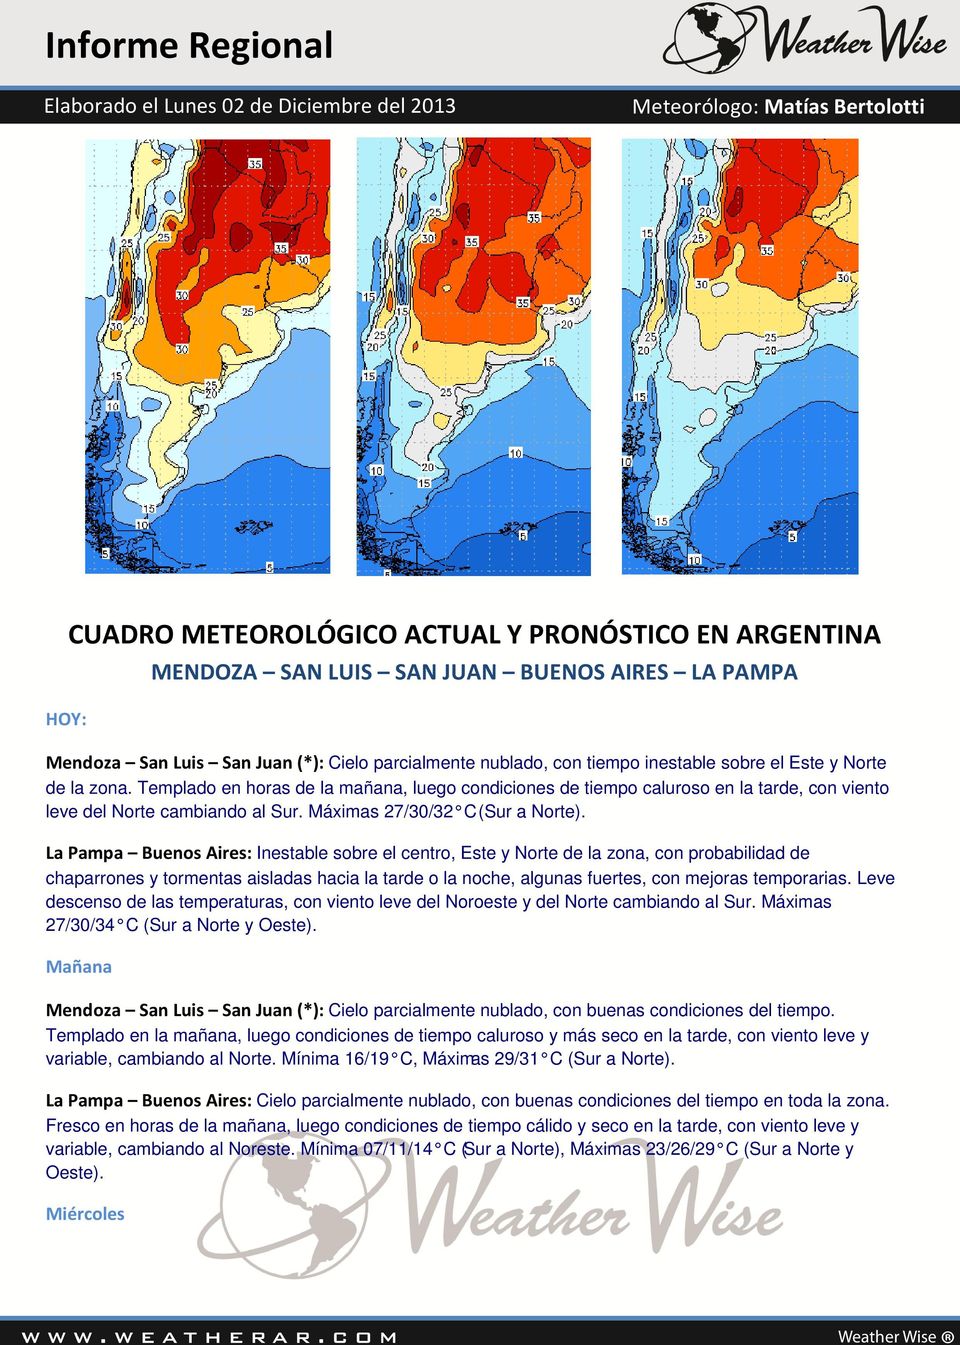 La Pampa Buenos Aires: Inestable sobre el centro, Este y Norte de la zona, con probabilidad de chaparrones y tormentas aisladas hacia la tarde o la noche, algunas fuertes, con mejoras temporarias.